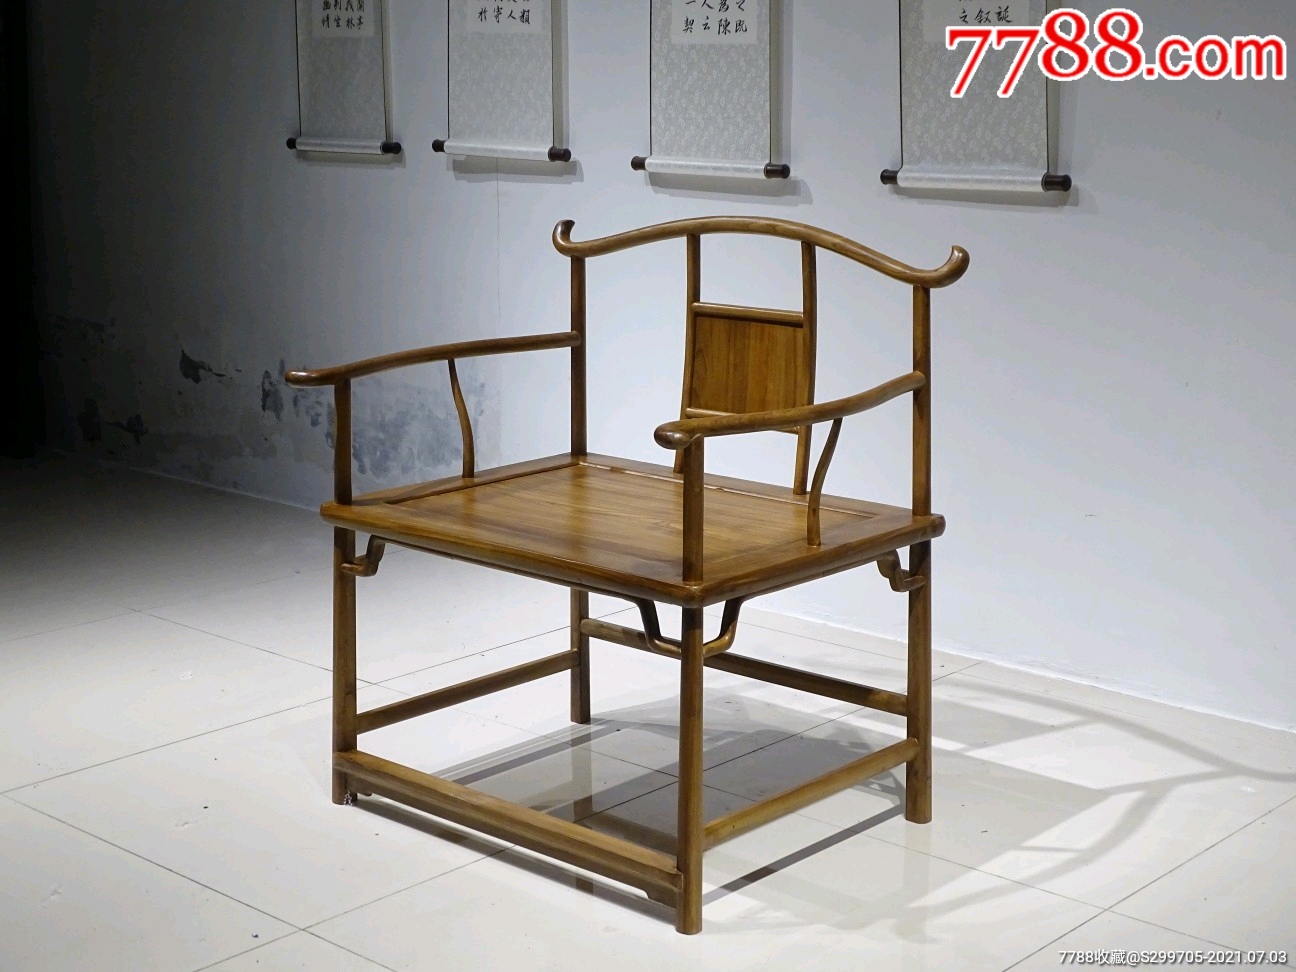 禅椅,明代制式,品相形体优美曲线都是一流,楠木,尺寸座面长80/宽60_木